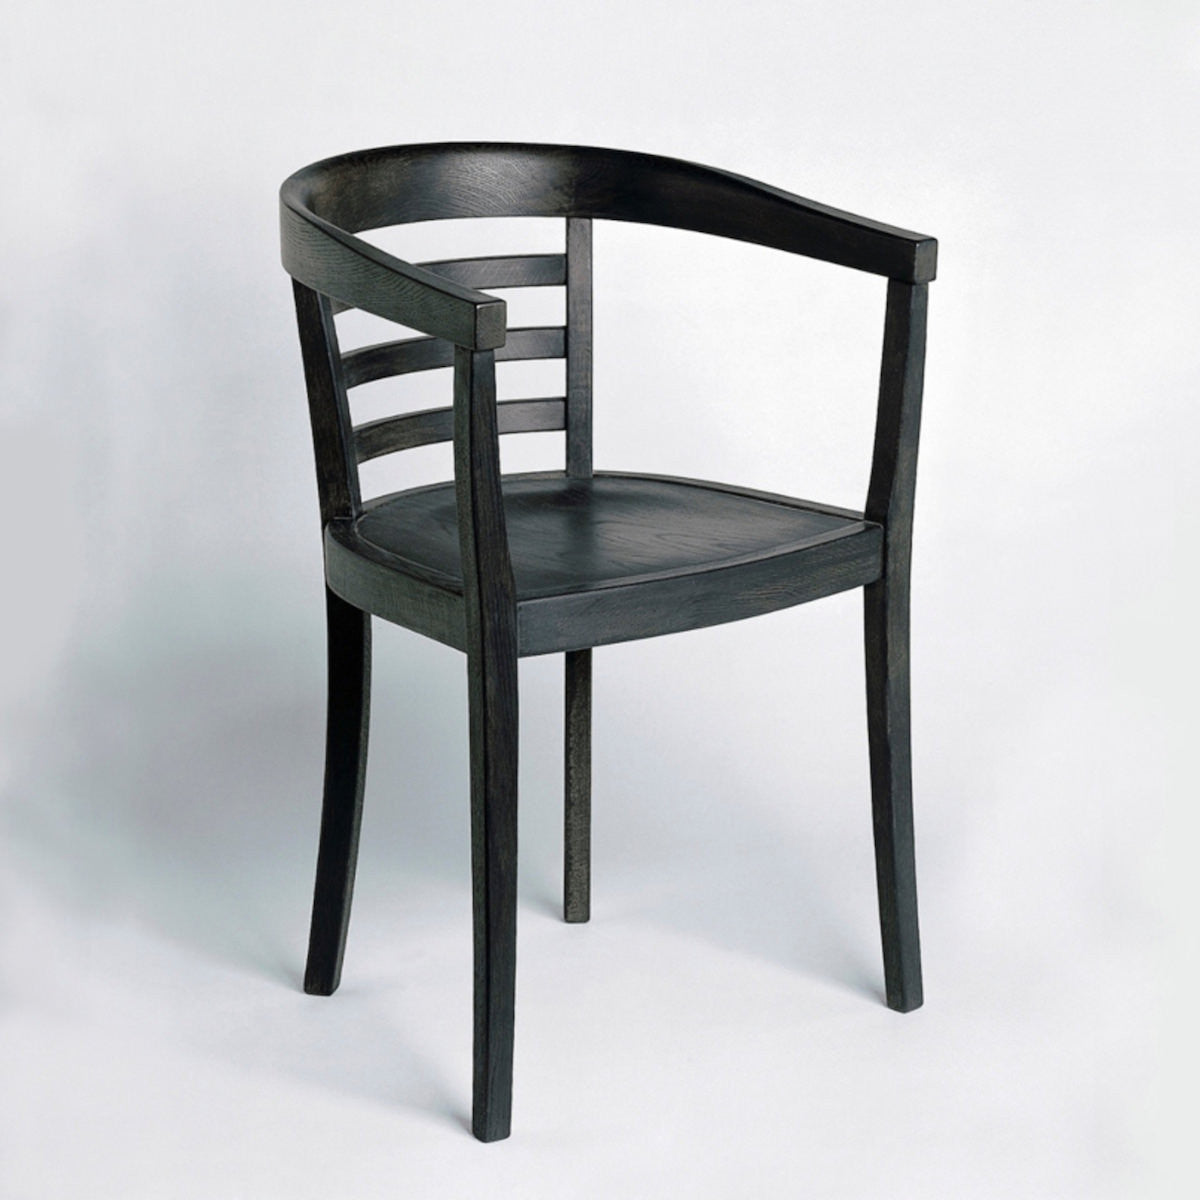 Modern designer chairs